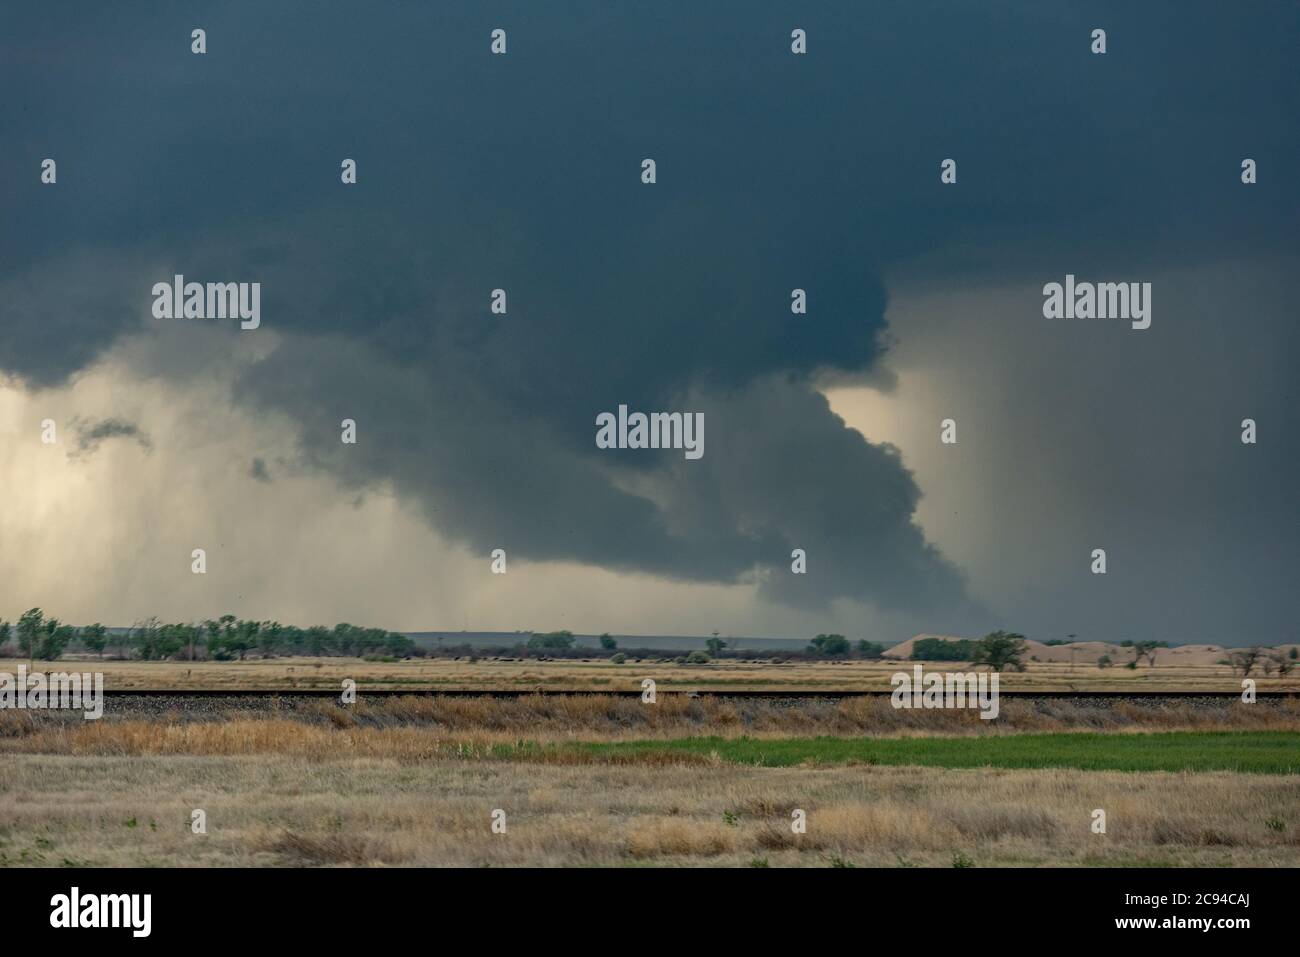 Ein riesiger Tornado bewegt sich schnell entlang einer Autobahn in Richtung einer Stadt Meilen vor. Stockfoto